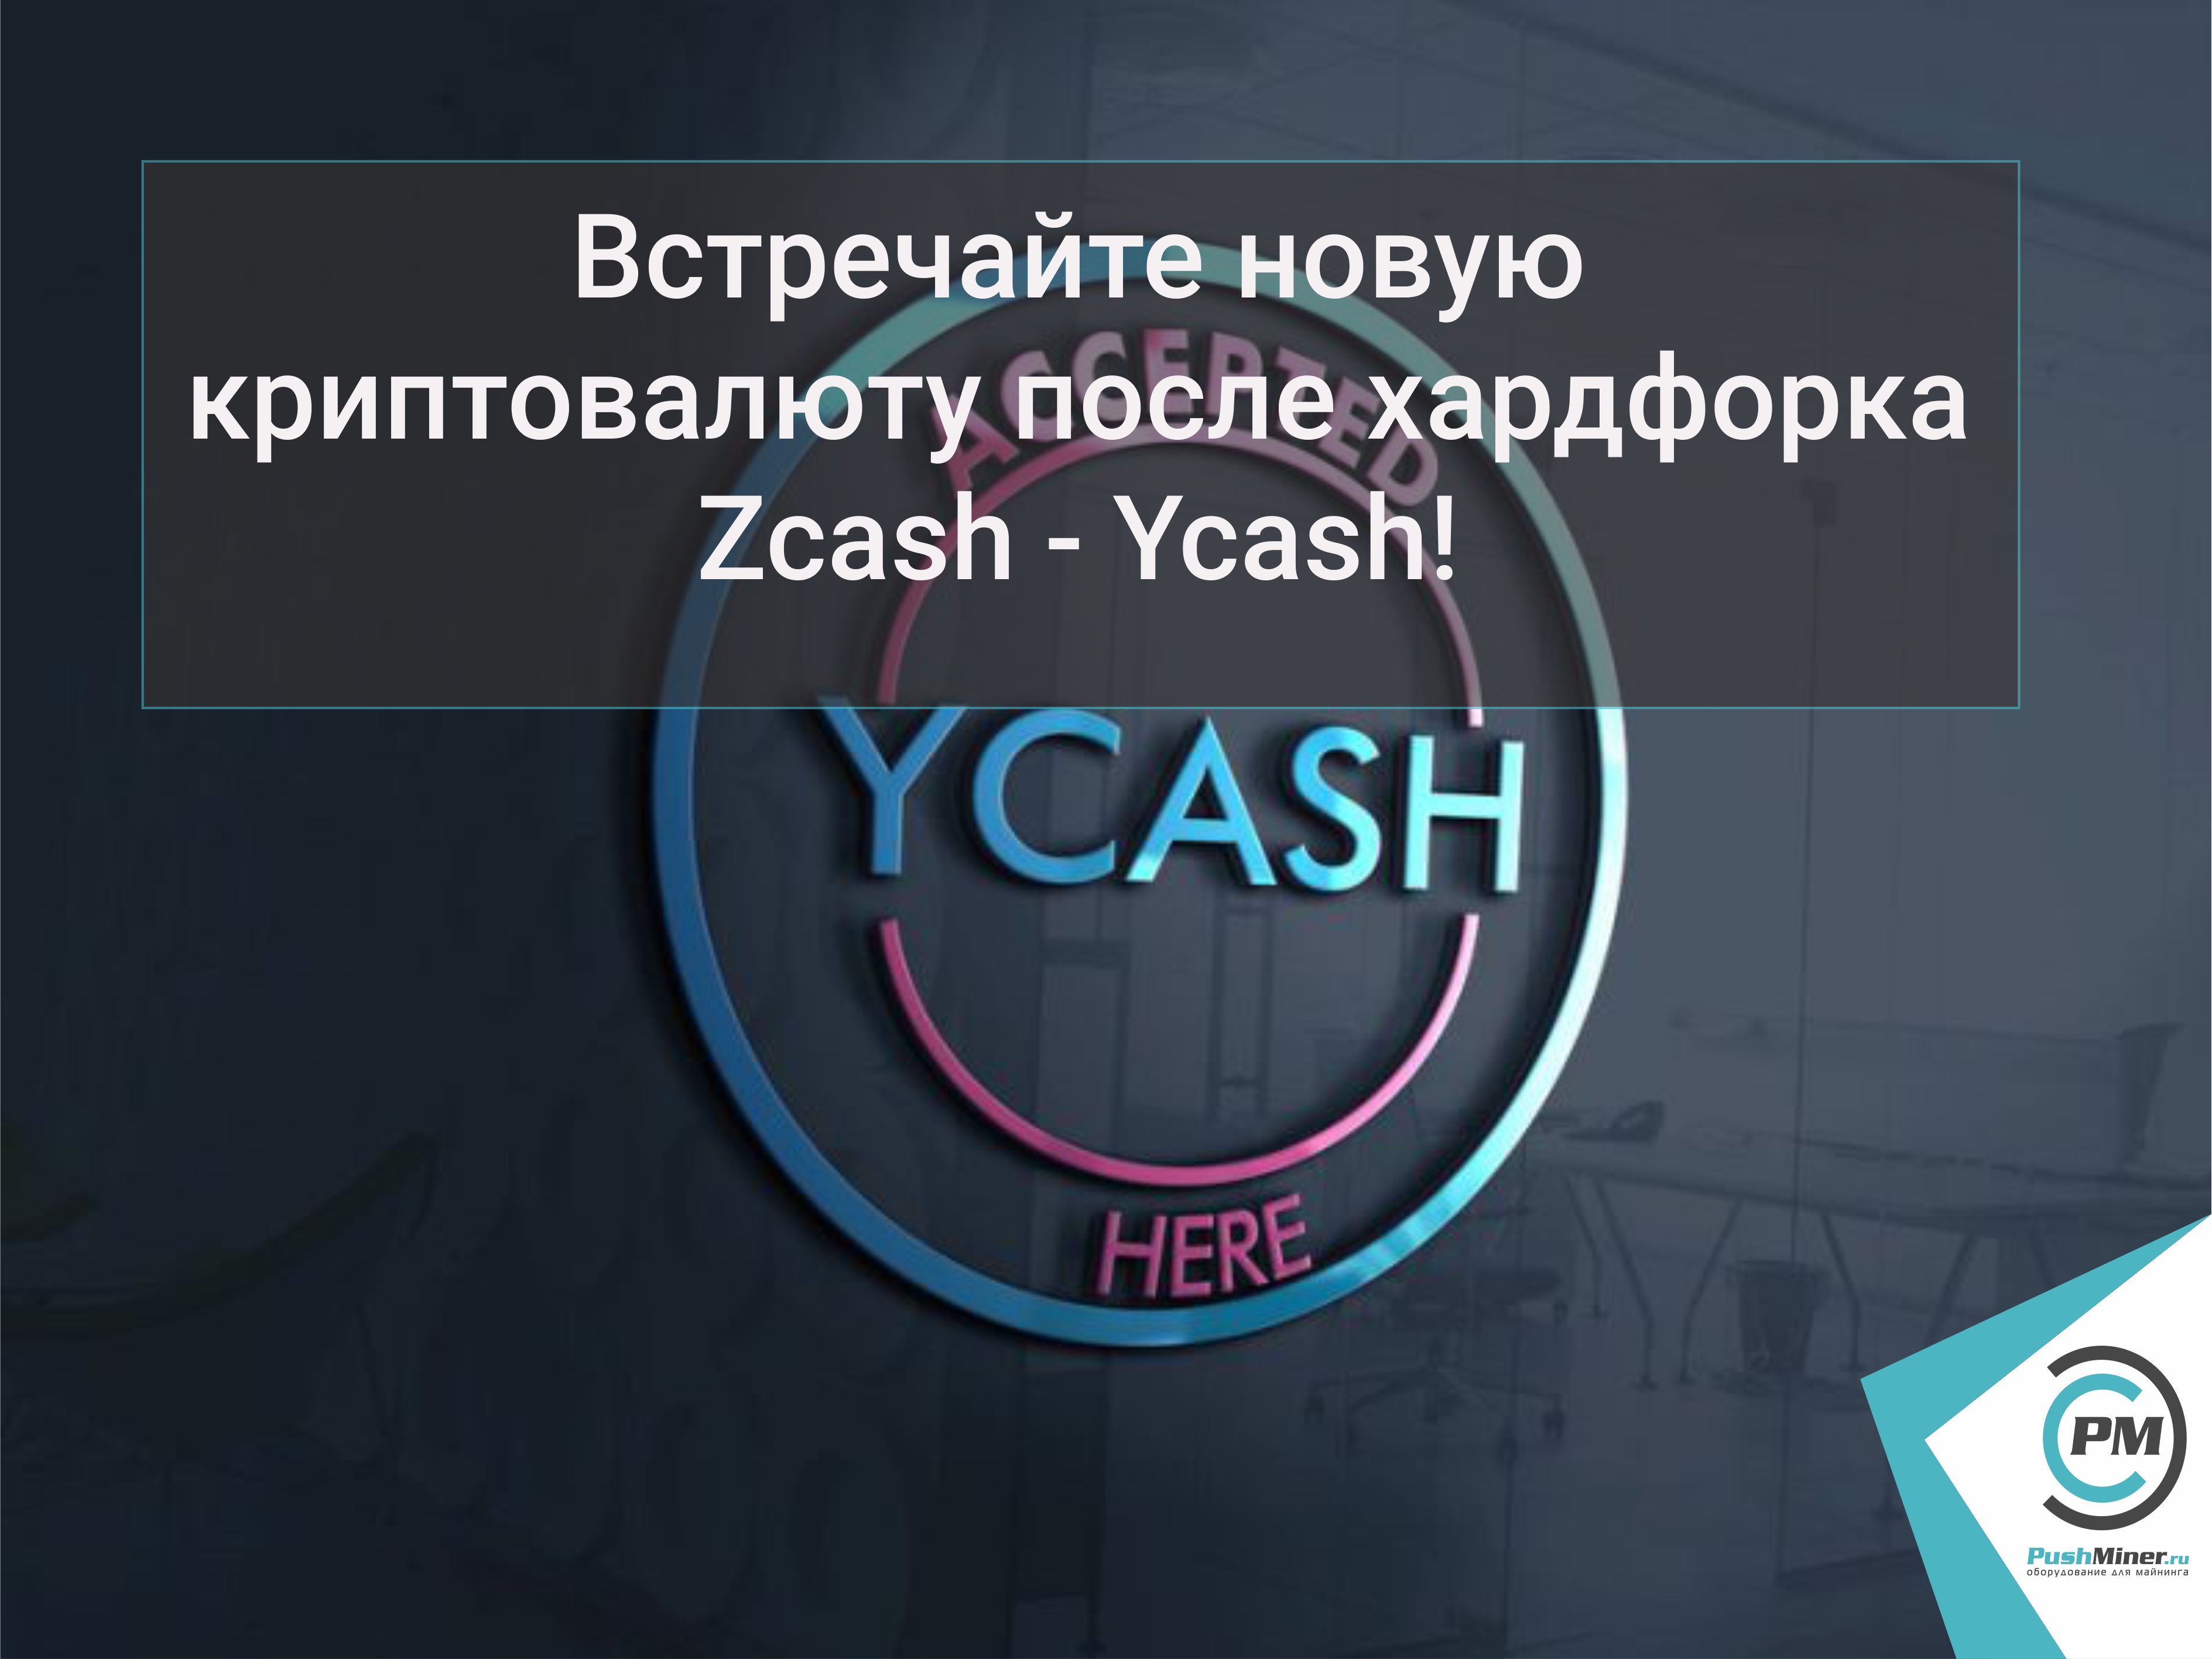 Встречайте новую криптовалюту после хардфорка Zcash - Ycash!